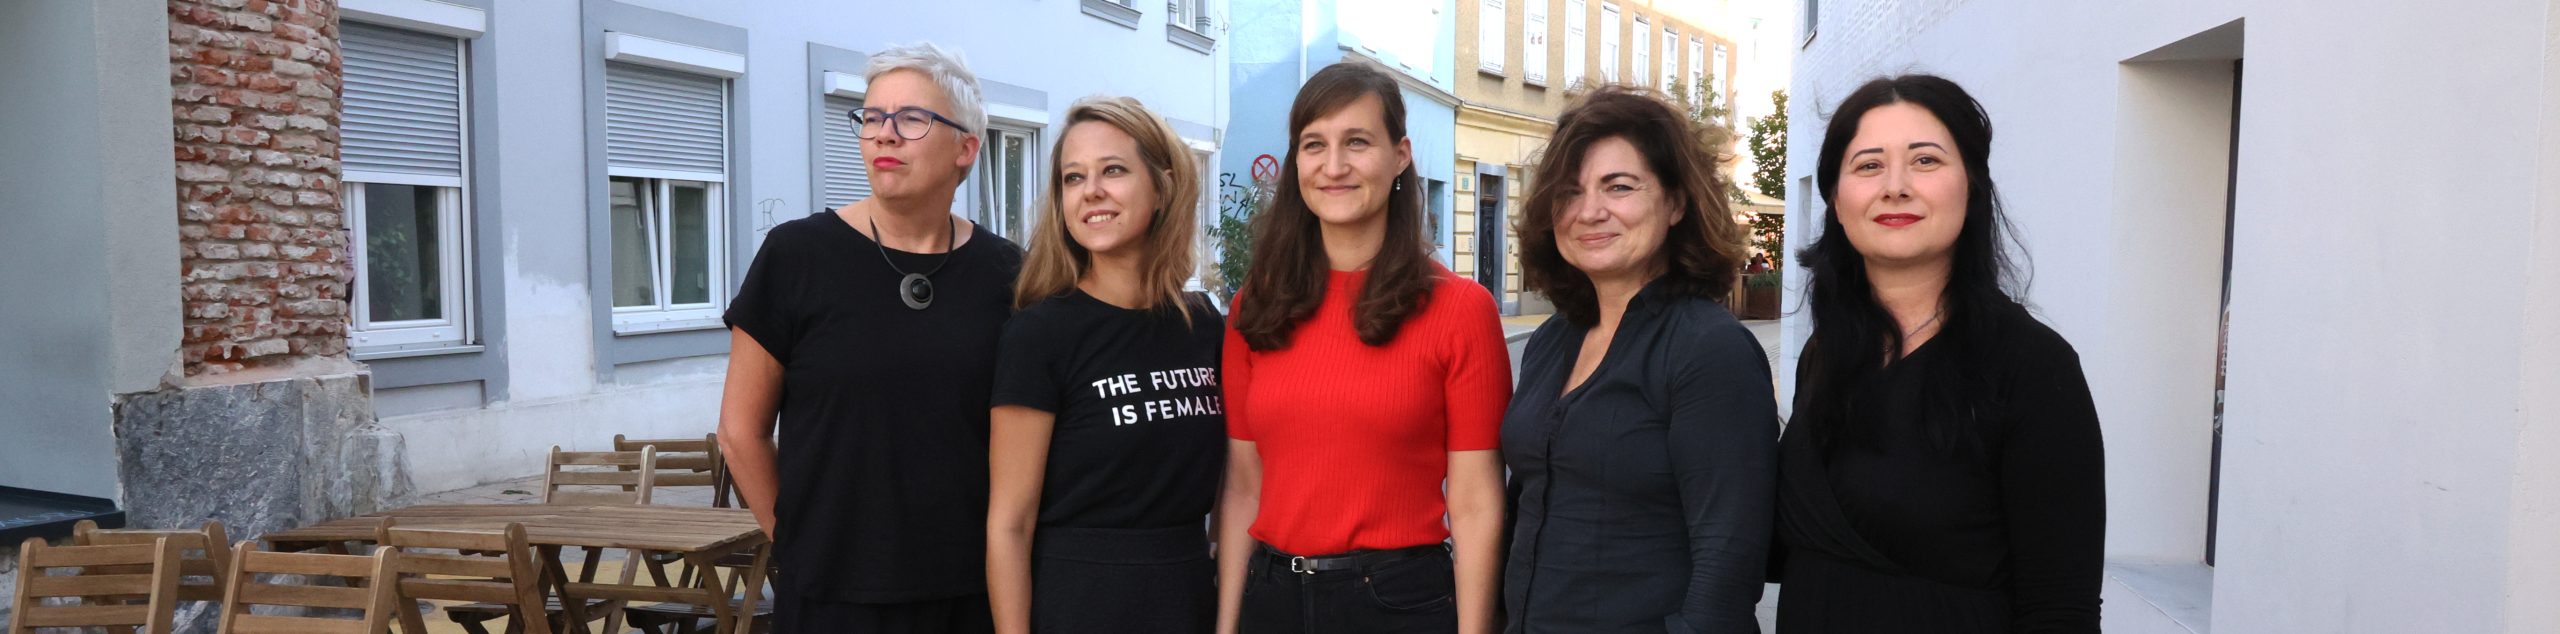 Die neuen fünf Obfrauen des Women's Action Forums.